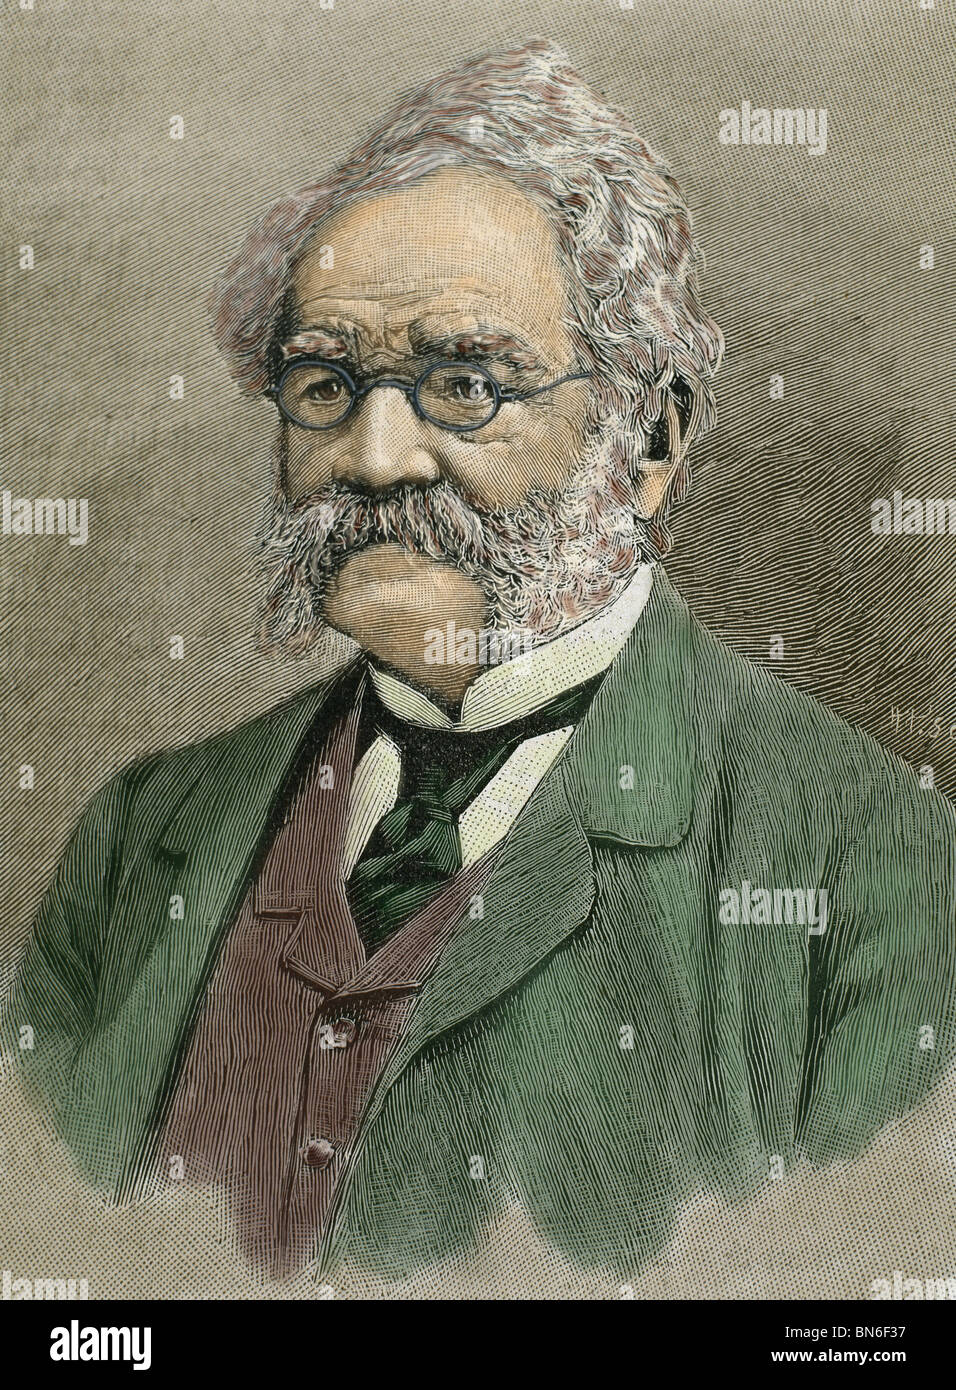 Siemens, Werner von (Lenthe, 1816-Charlottenburg, 1892). Ingeniero alemán. Grabado del siglo xix. Foto de stock